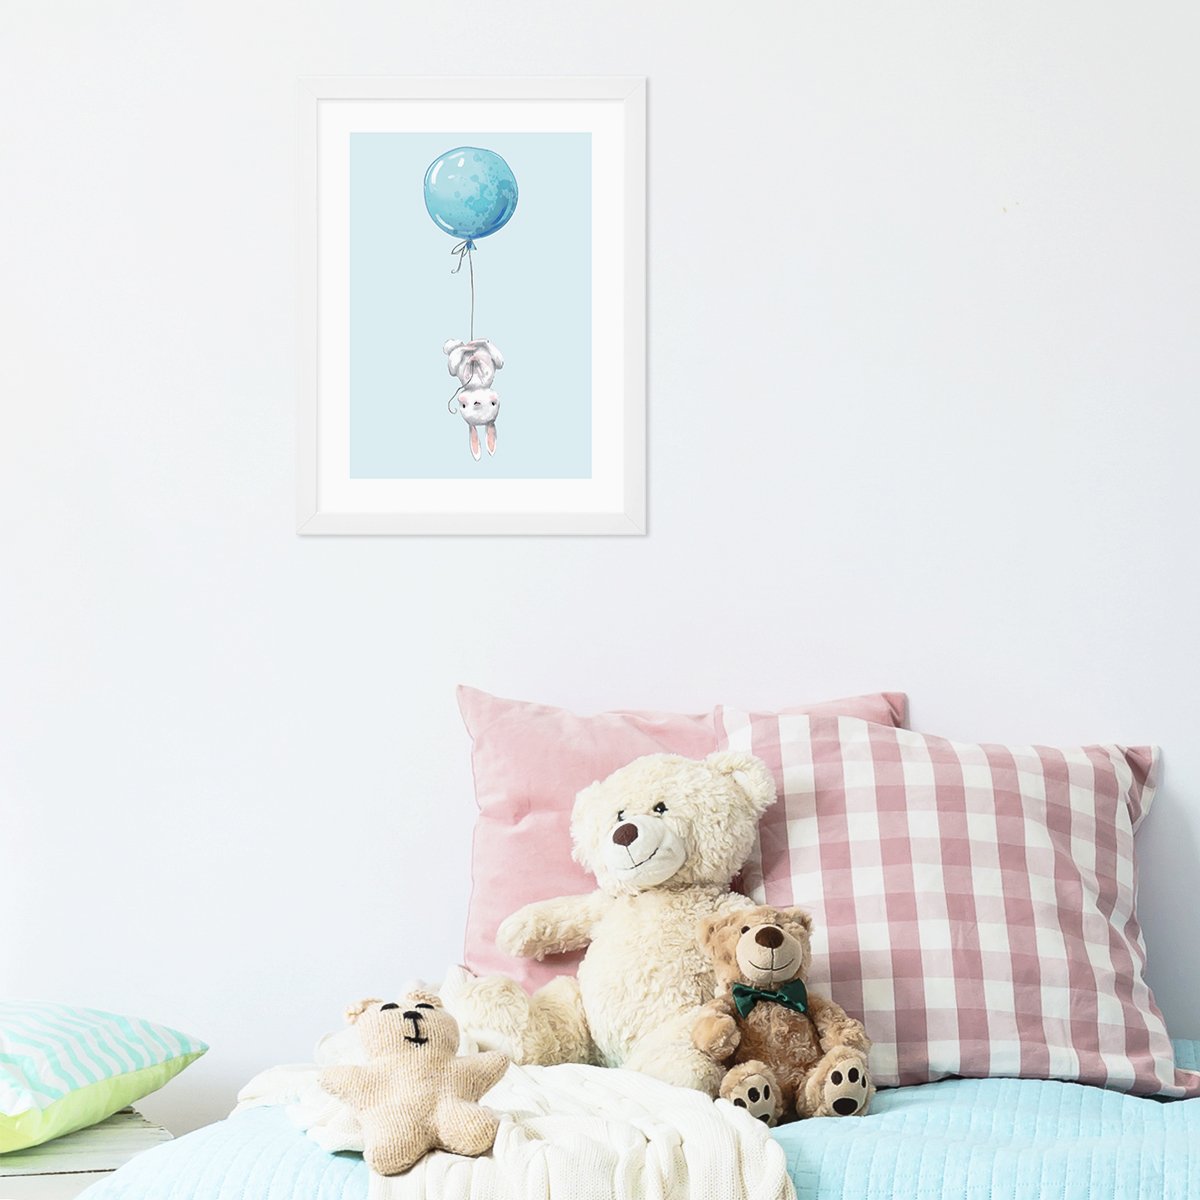 Plakat do pokoju dziecka z króliczkiem i błękitnym balonikiem#kolor_niebieski